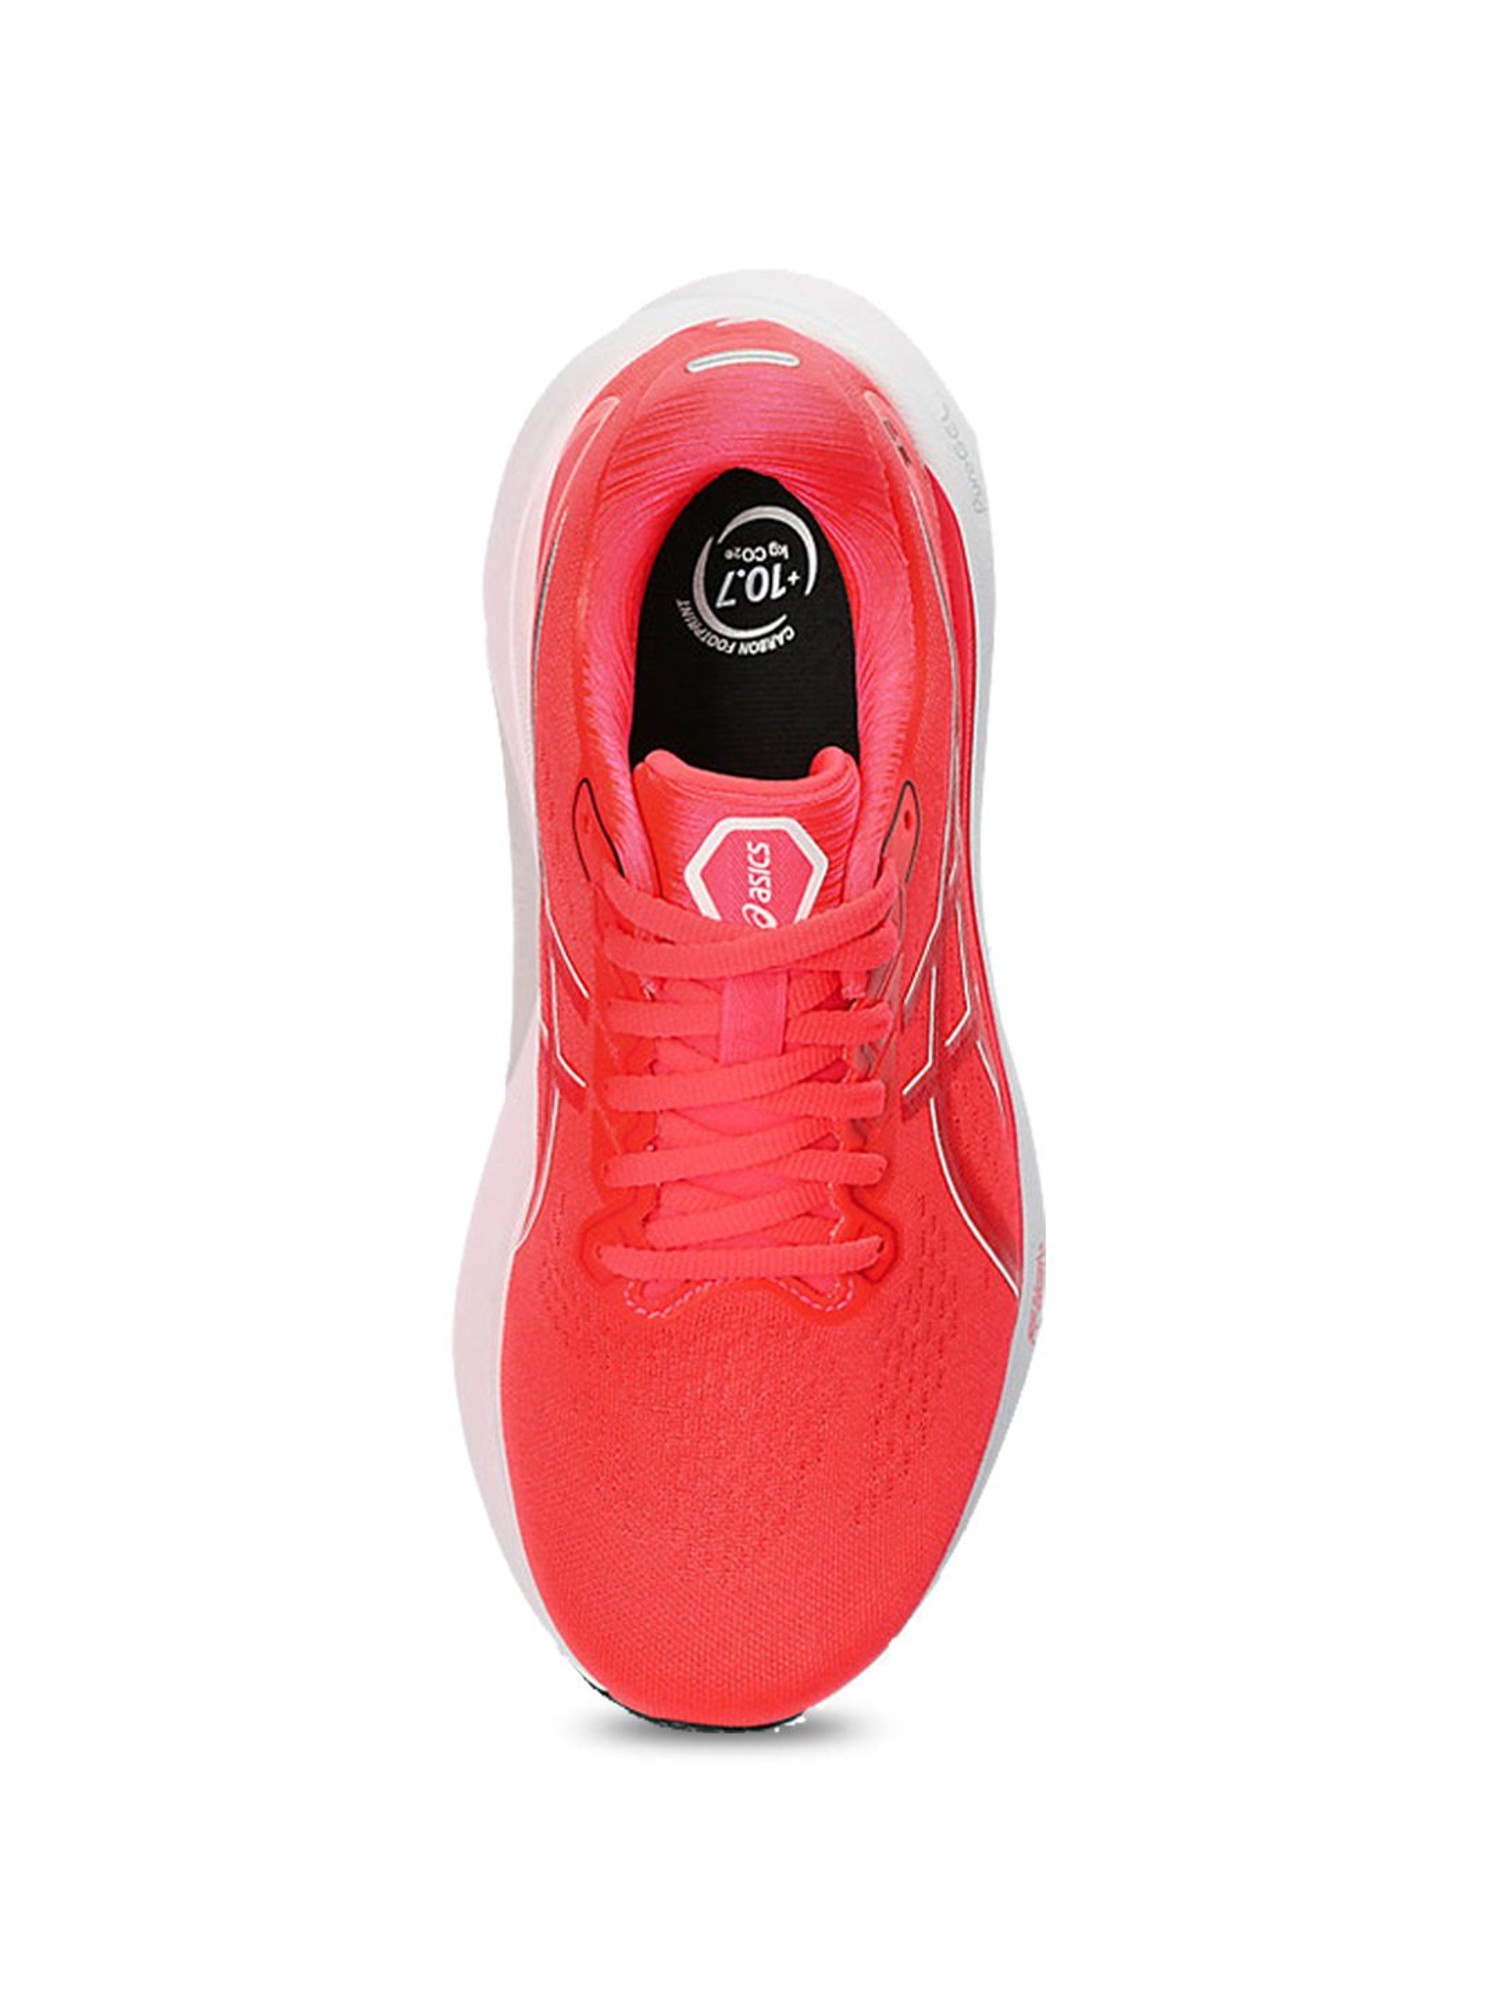 Asics Gel Kayano 30 Women's Running Shoes - Diva Pink